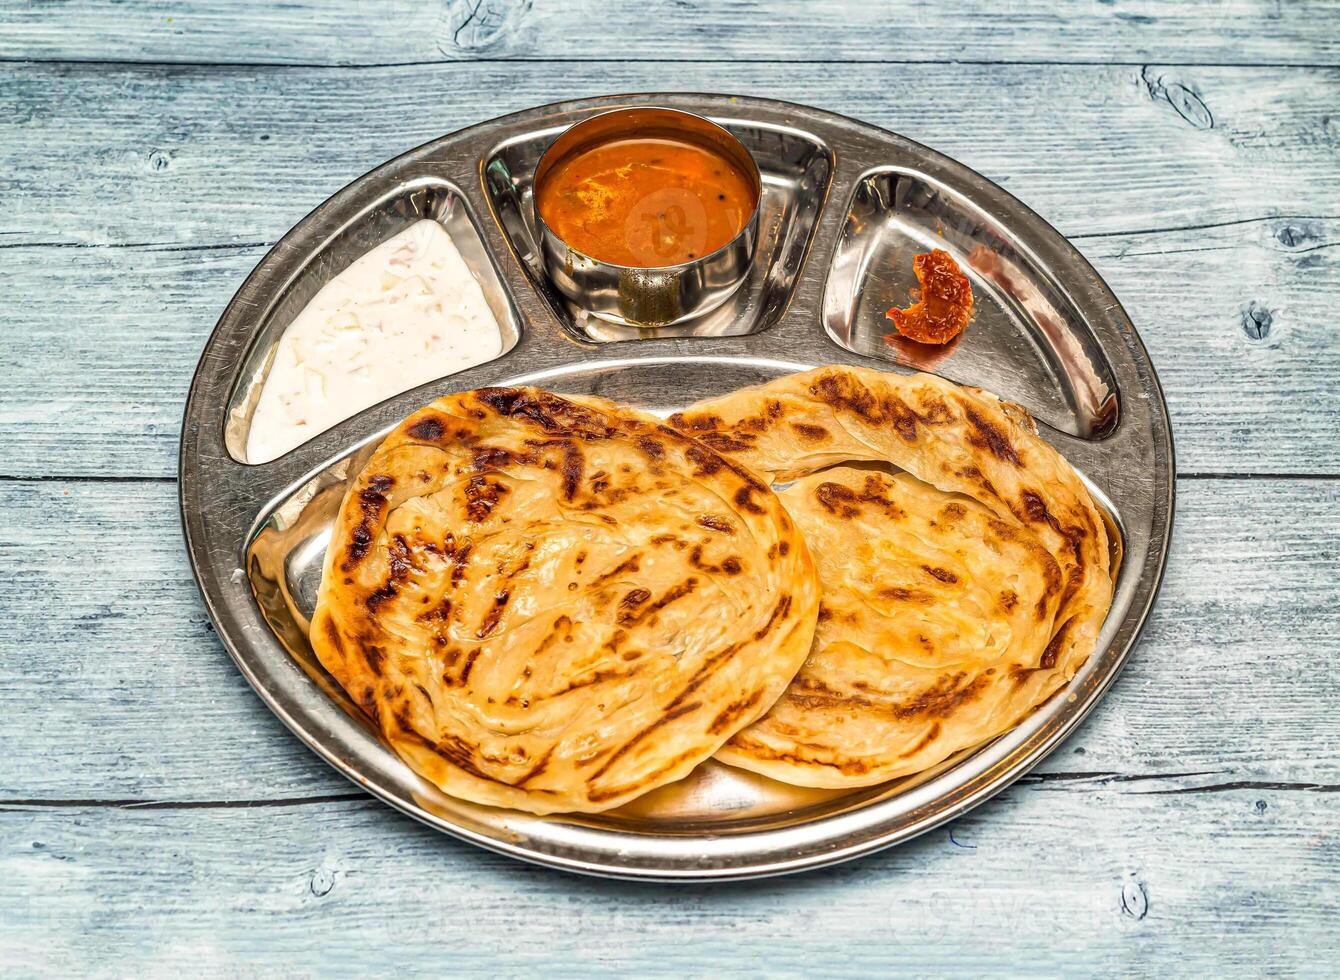 Roti prata, parata, parata, poratha con curry, raita y pepinillo servido en thali plato aislado en de madera mesa parte superior ver de indio picante comida foto